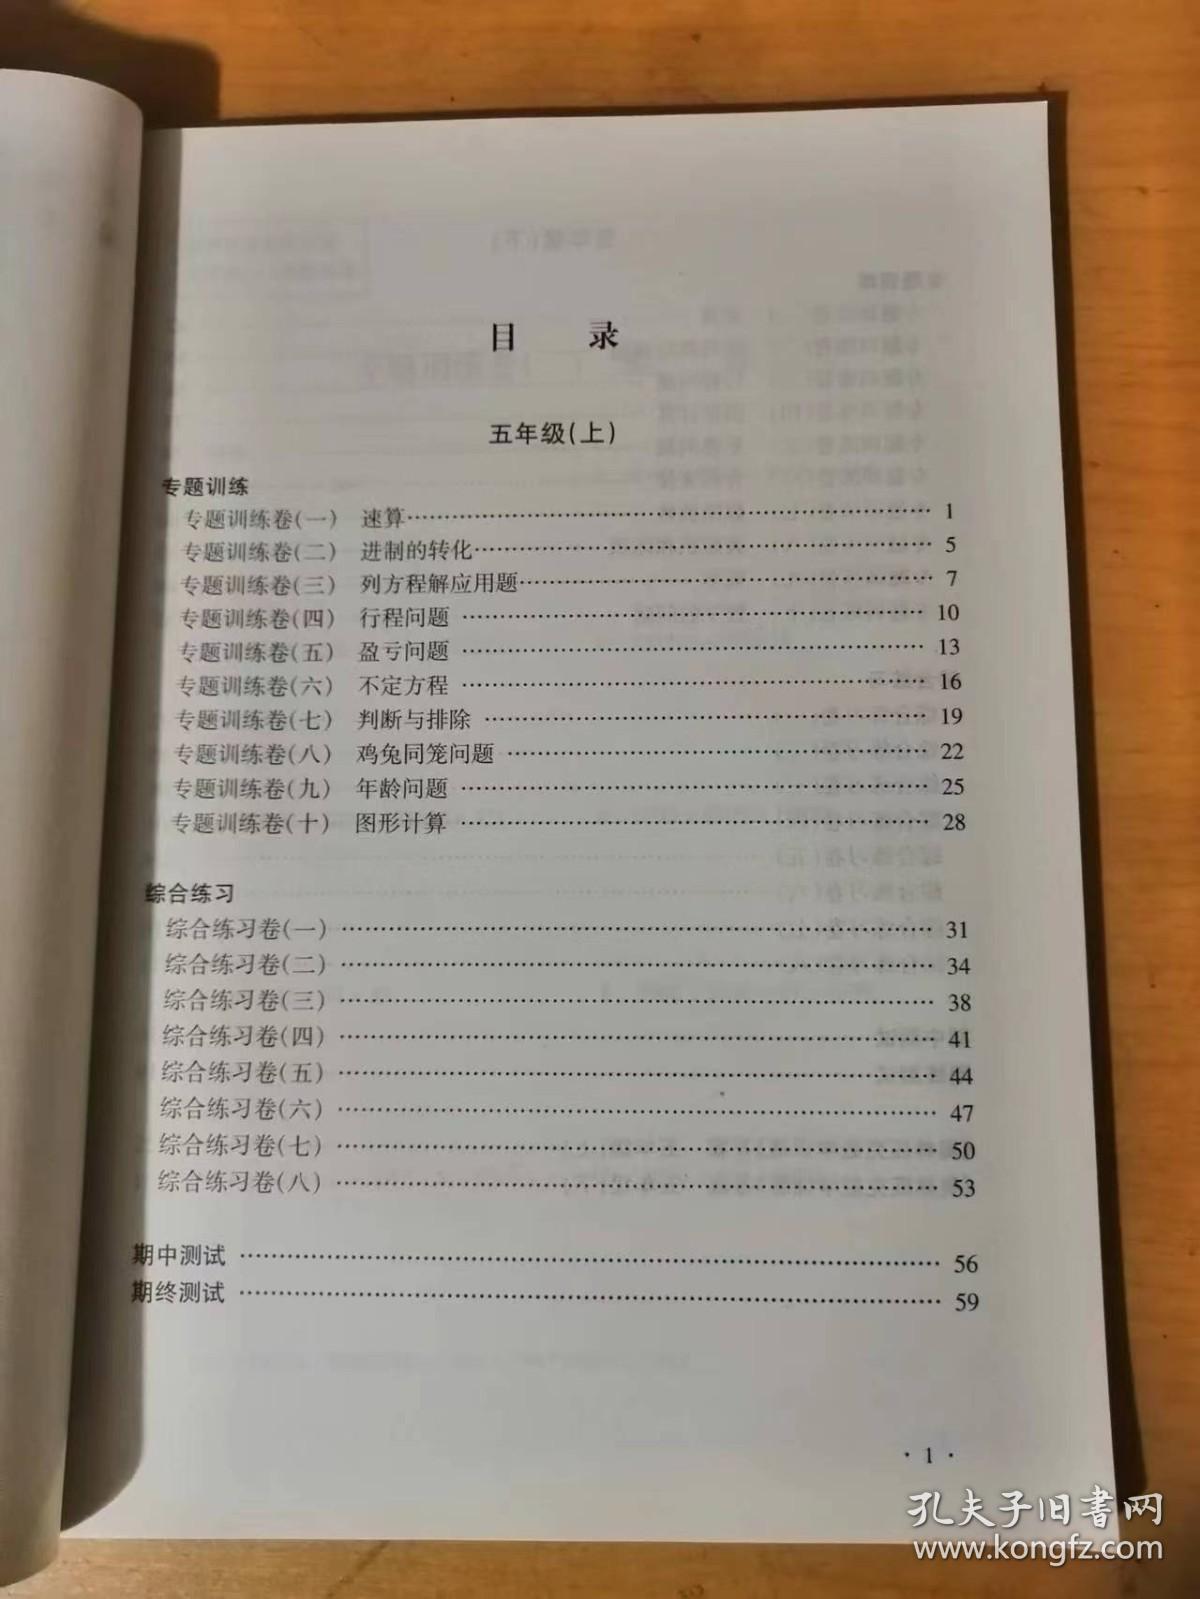 2002年6月 上海远东出版社《奥林匹克数学训练-五年级》/速算/进制的转化/列方程解应用题/行程问题/盈亏问题/不定方程/判断与排除/鸡兔同笼问题/年龄问题/图形计算……